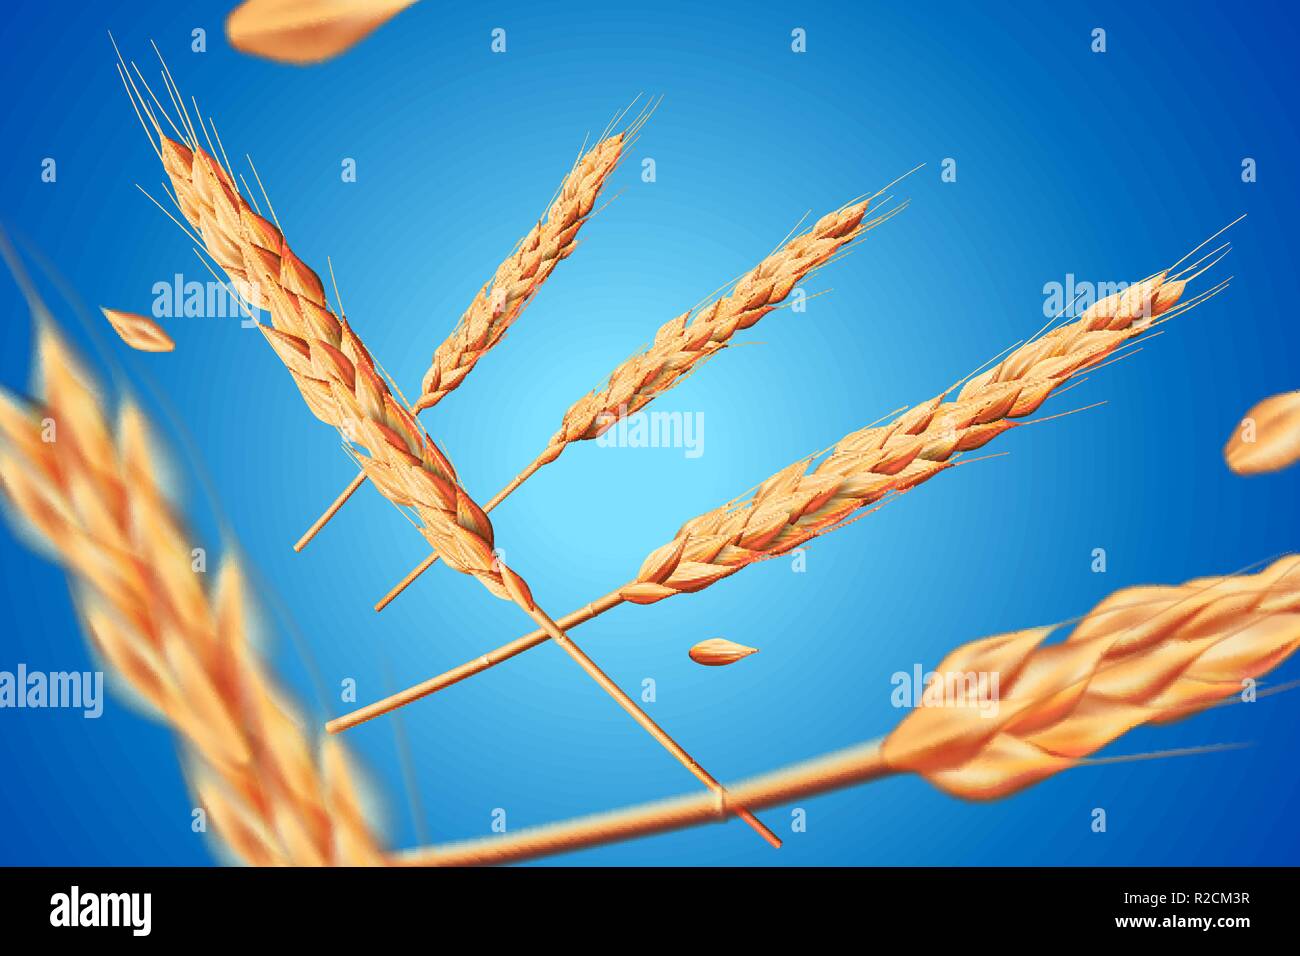 Realistische Weizen, Hafer Elemente. Flying detaillierte Gerste auf blauem Hintergrund für gesunde Ernährung oder Landwirtschaft design isoliert. Vector 3d-Abbildung. Stock Vektor